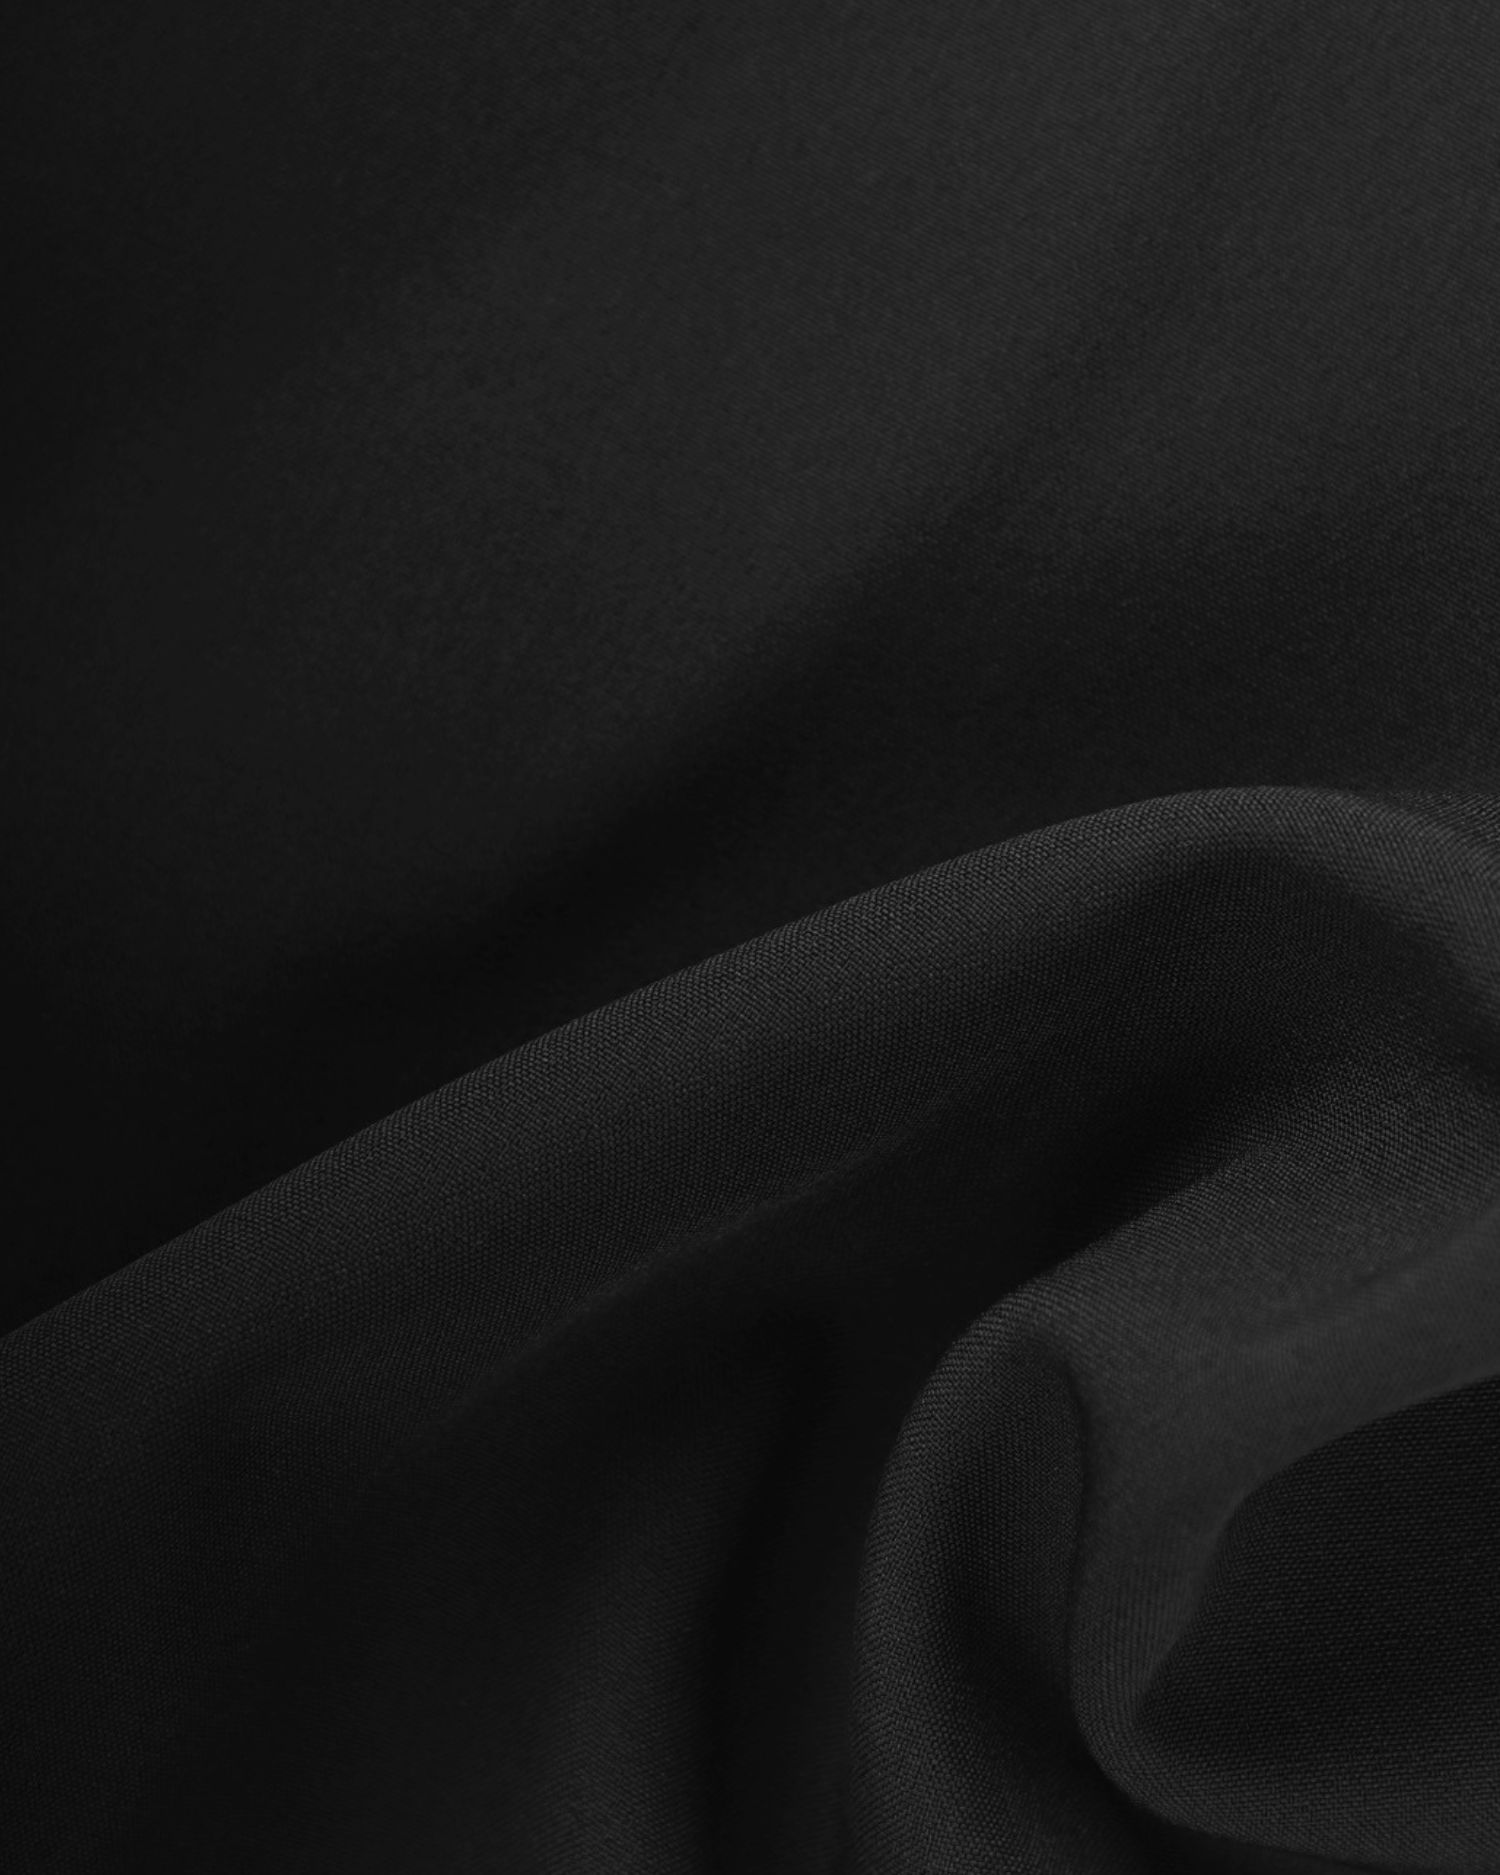 Softshell pružný odlehčený zimní s fleecem, 1 metr, černý